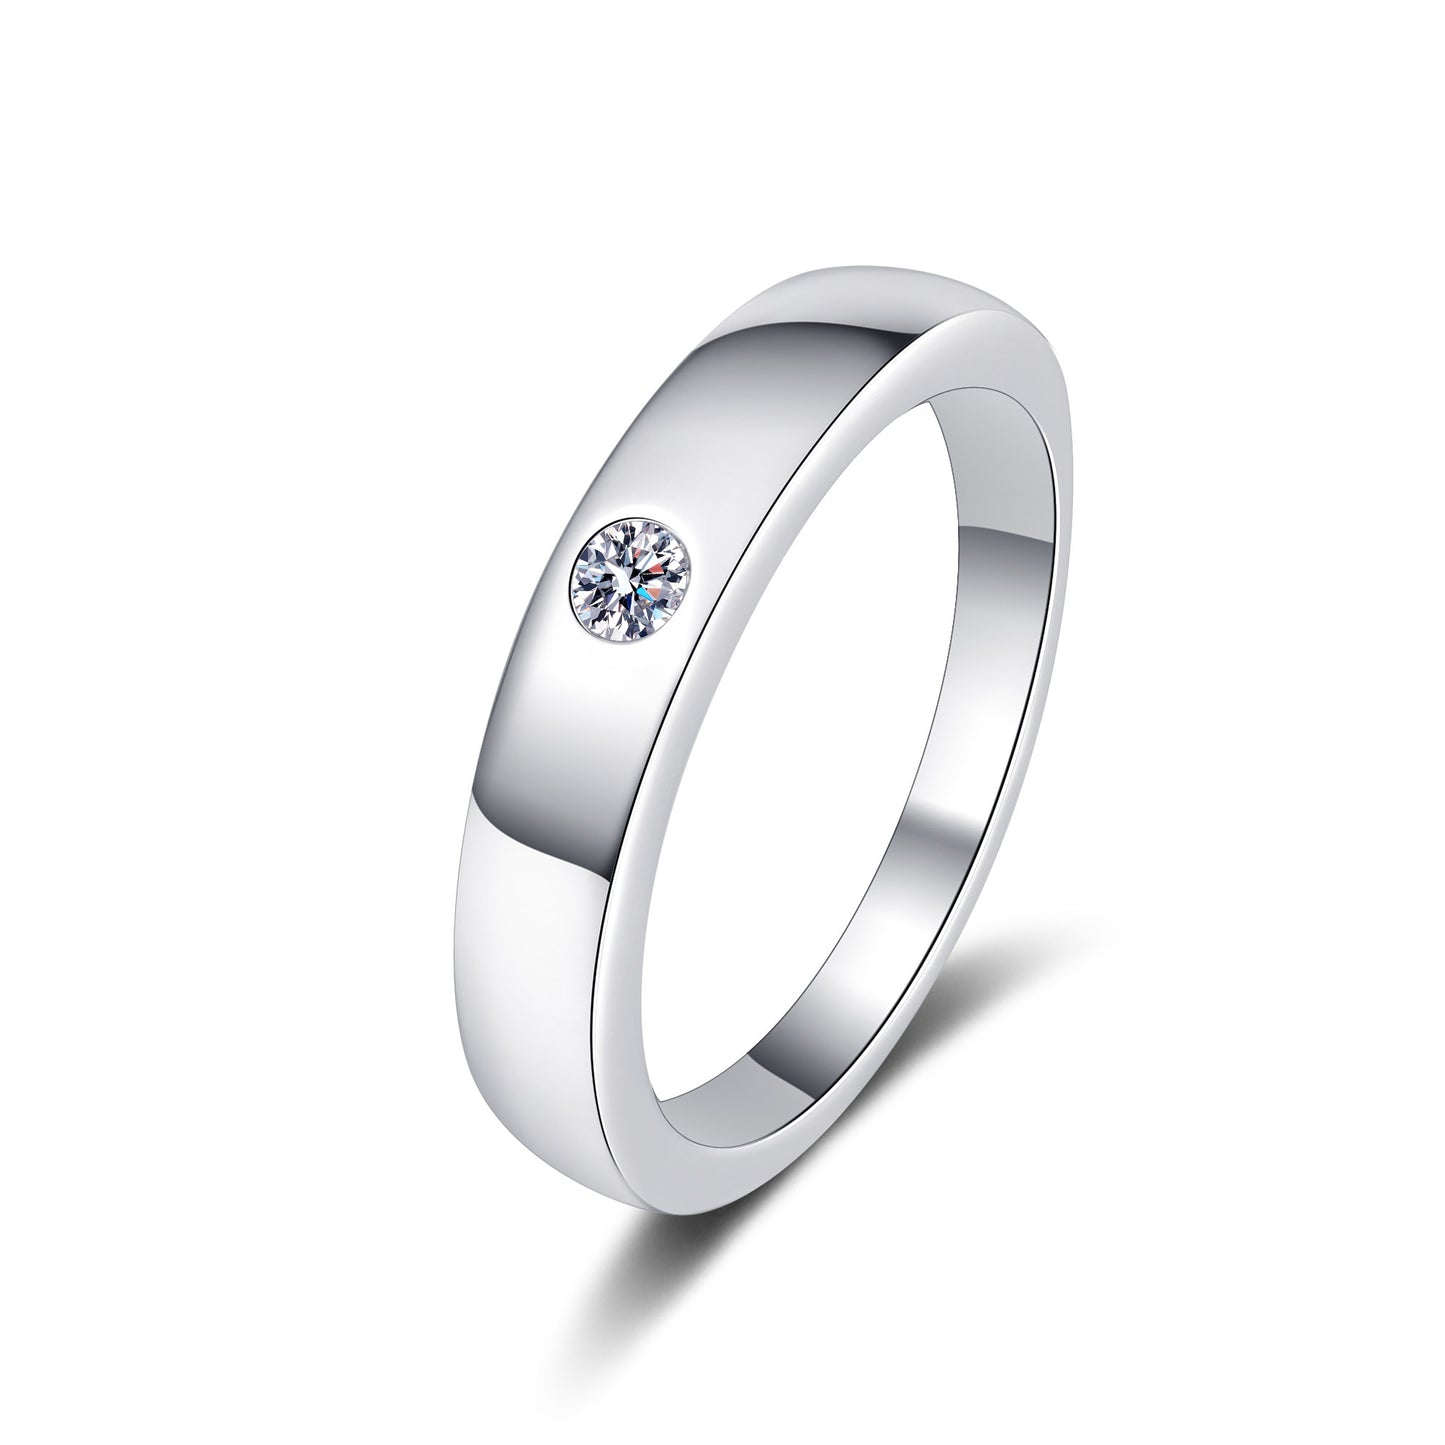 Unisex-Band mit 0,1 Karat Moissanit-Diamant, platiniert, S925, als Trauring oder passender Ehering 